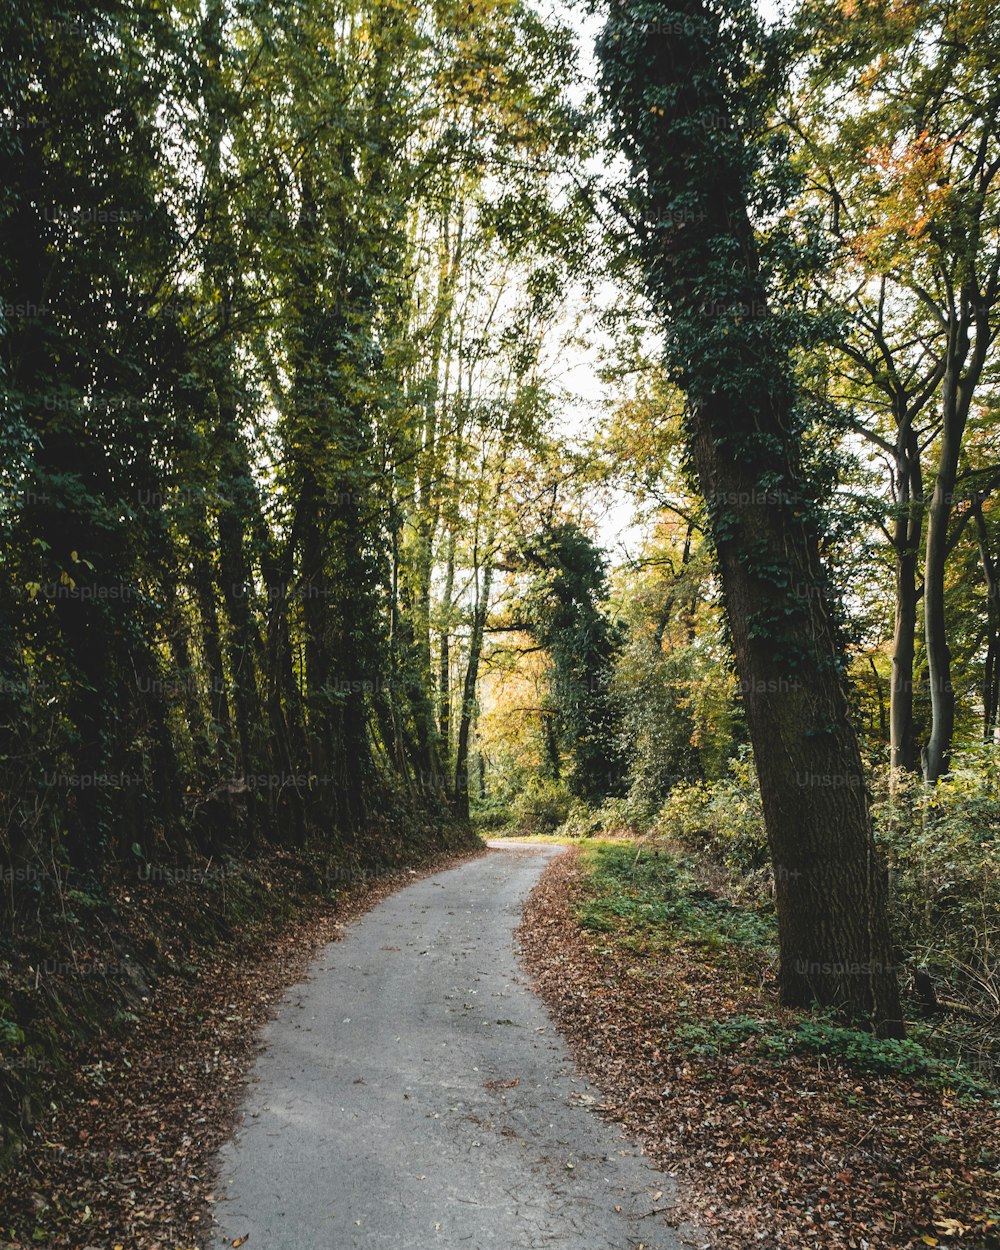 Un camino en medio de una zona boscosa